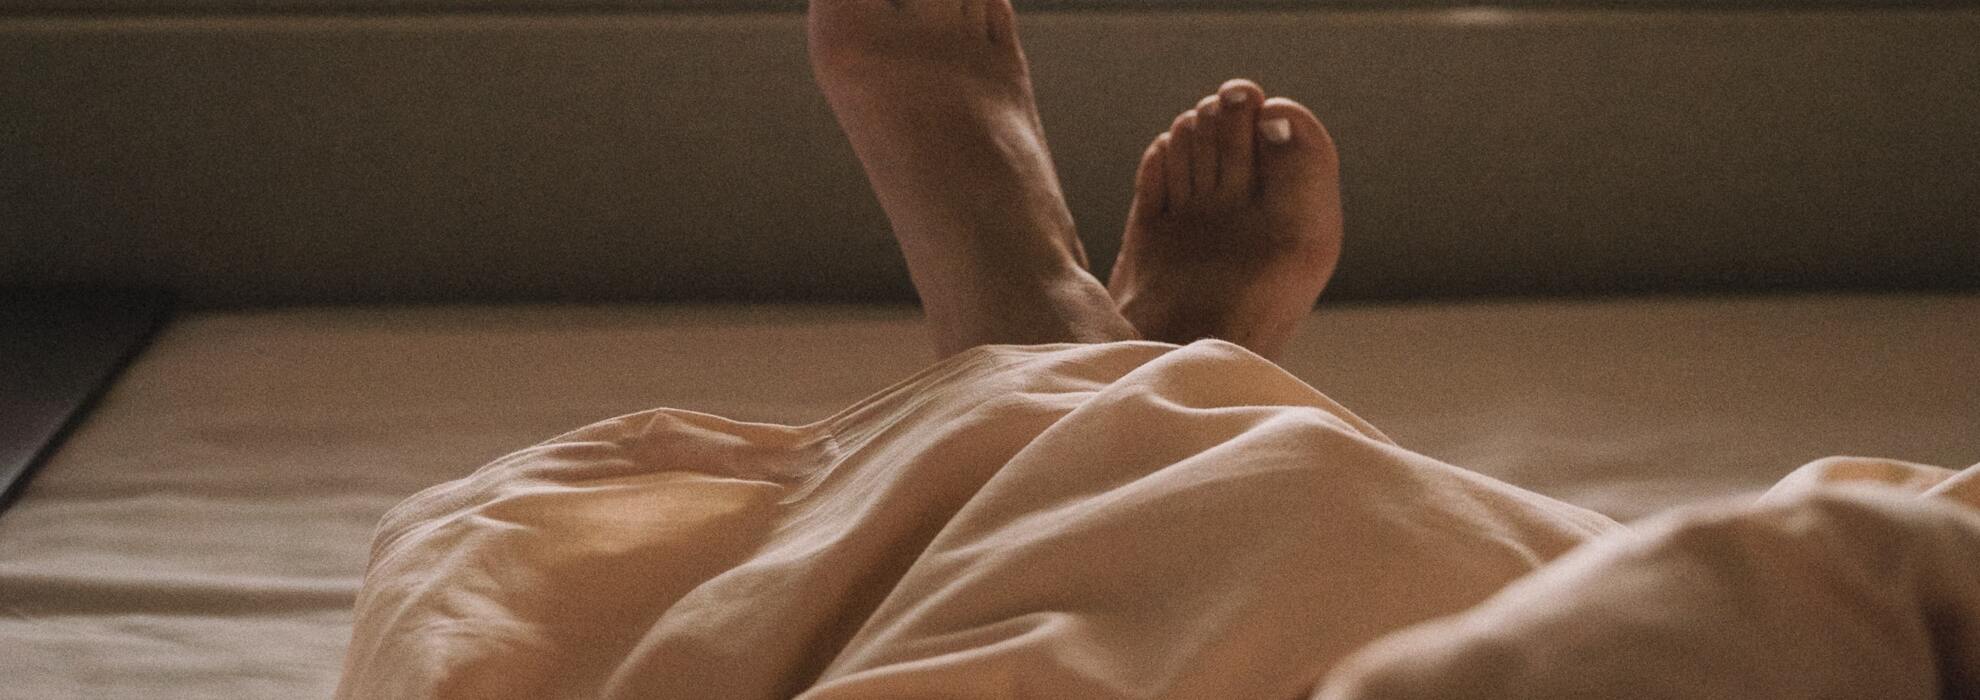 Fötter i säng